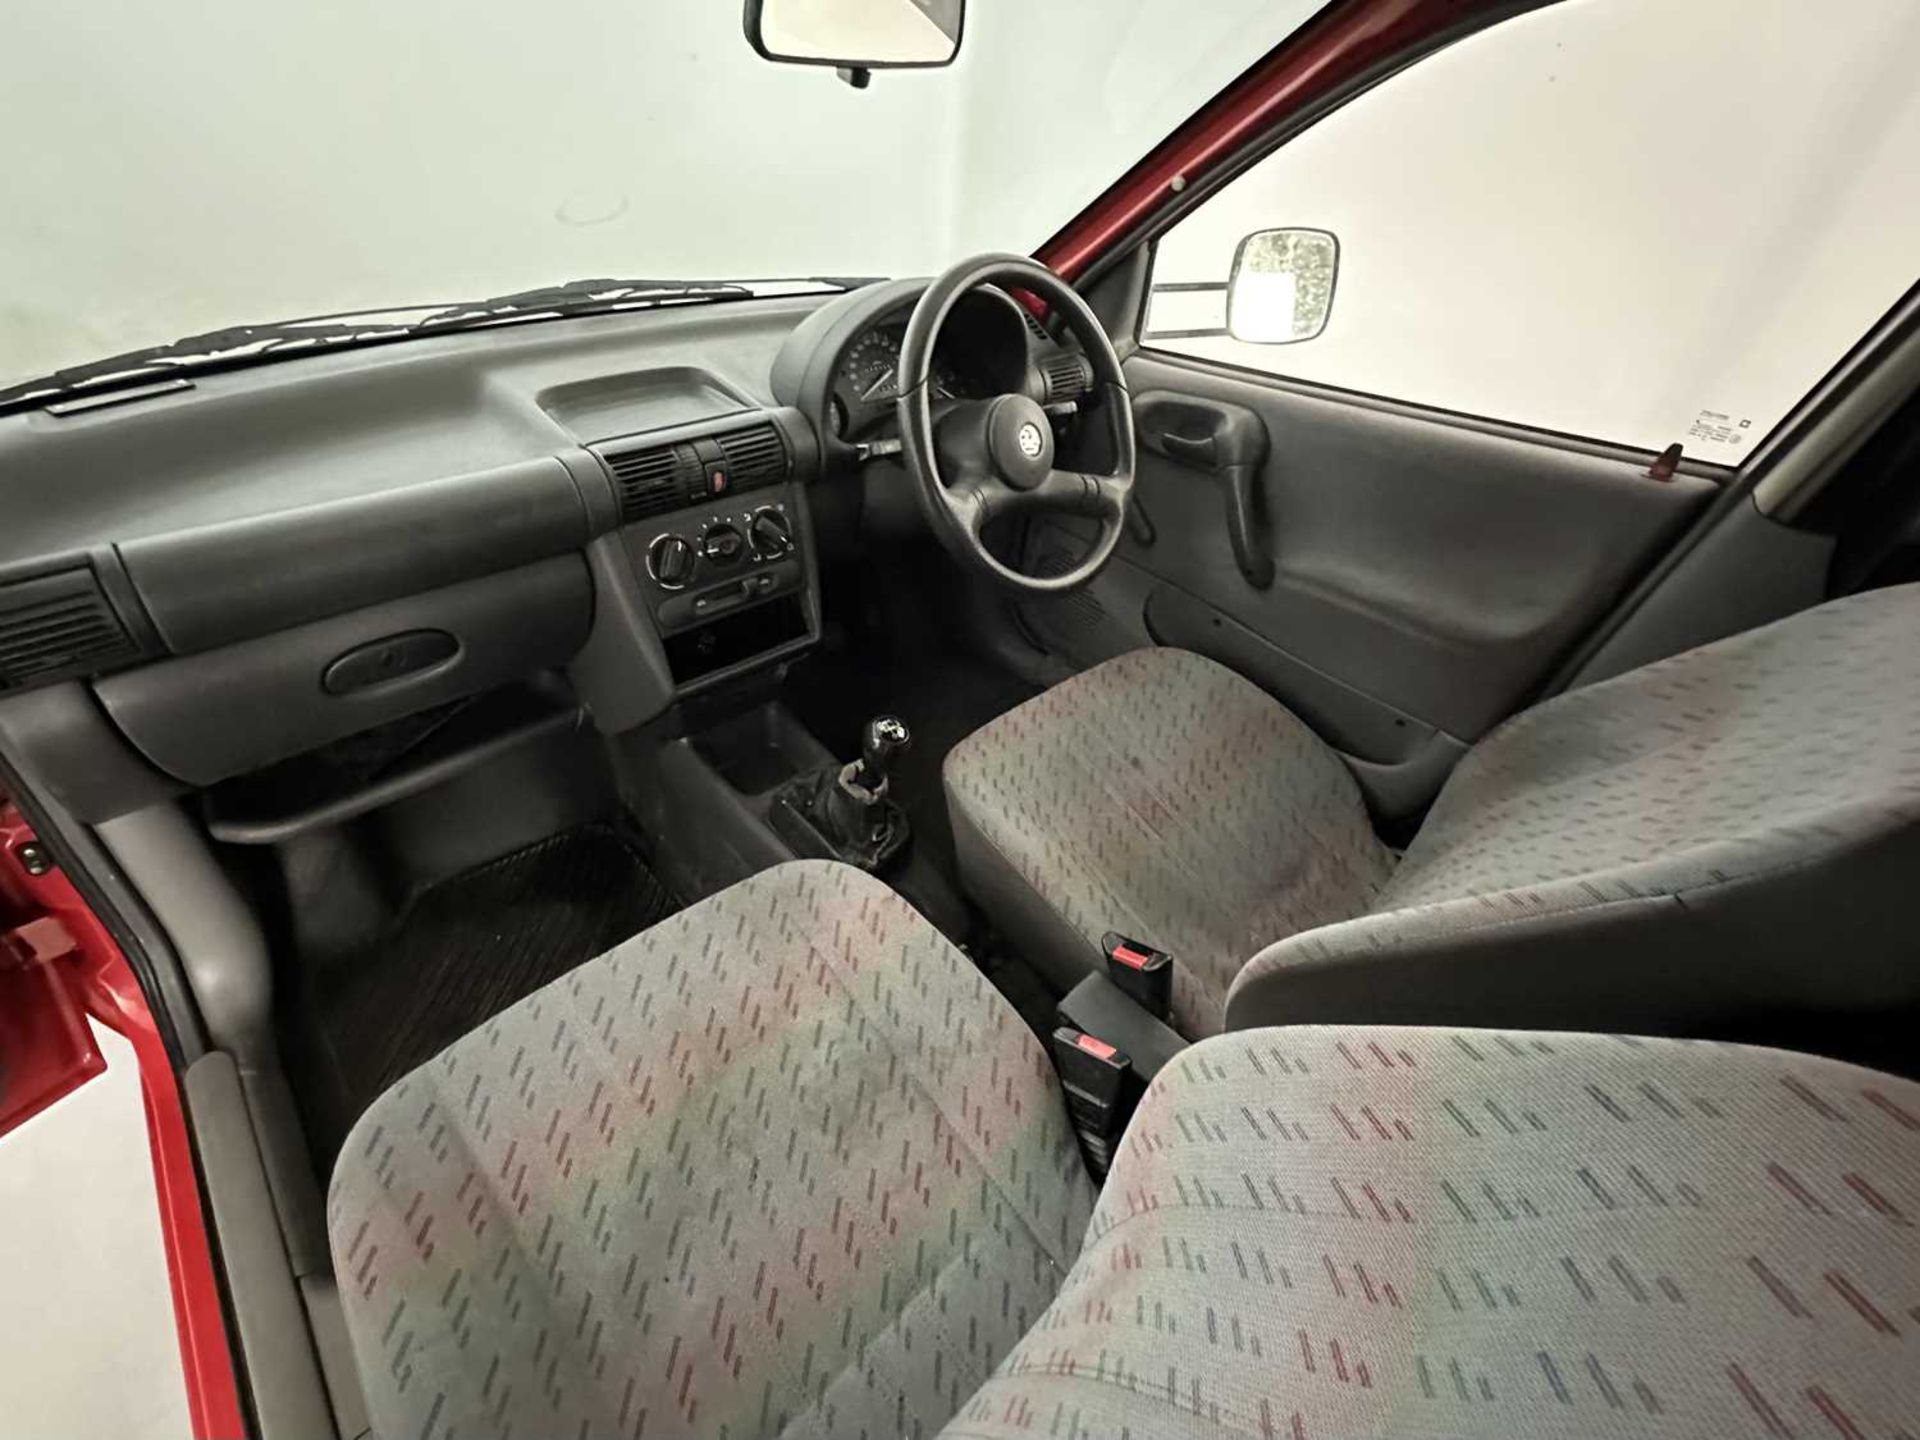 1996 Vauxhall Corsa B Combo - Image 22 of 28